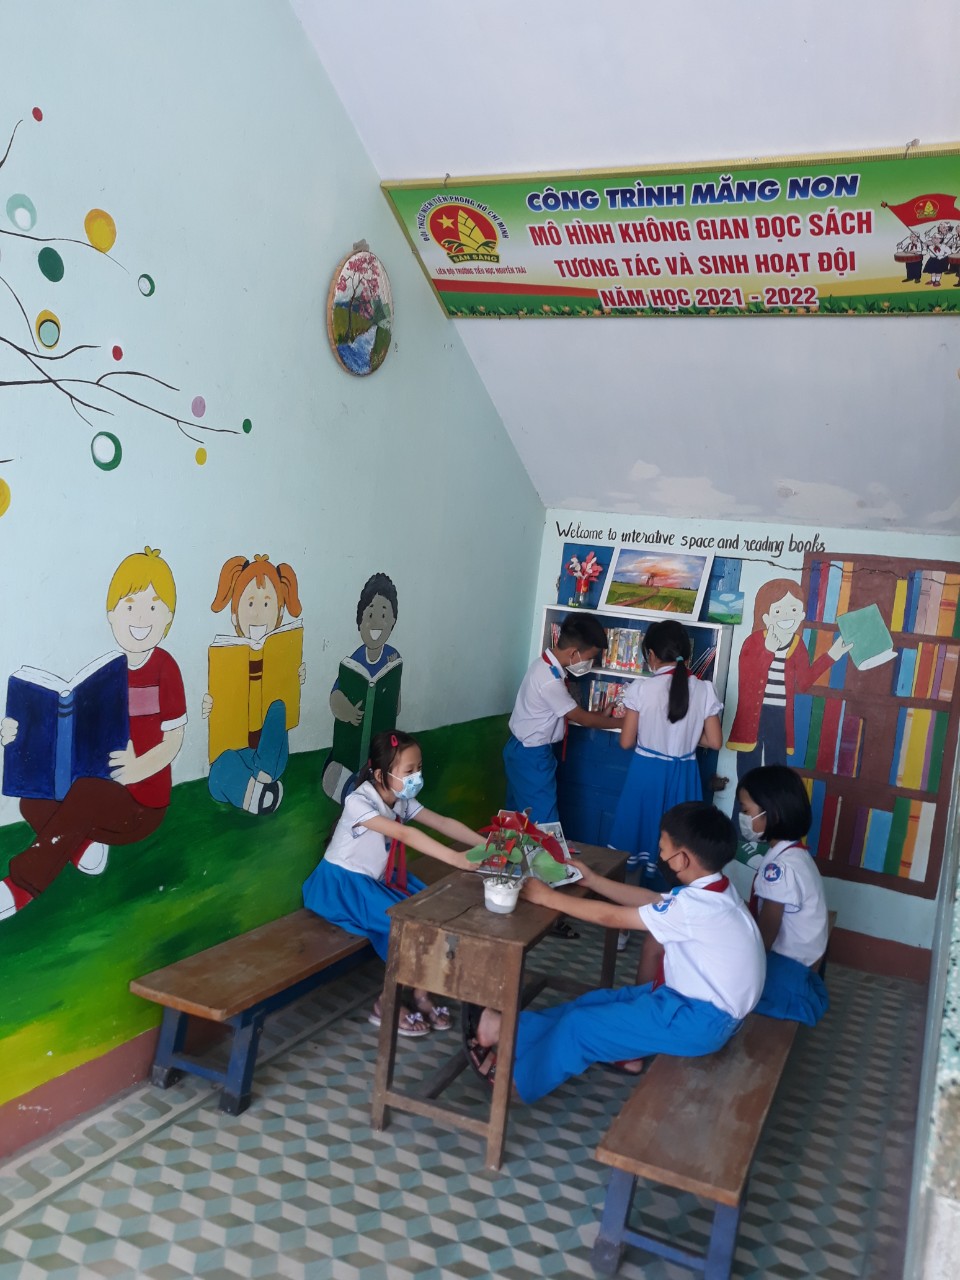 Liên đội Trường Tiểu học Nguyễn Trãi hoàn thành công trình măng non: Mô hình "Không gian đọc sách, tương tác và sinh hoạt Đội".